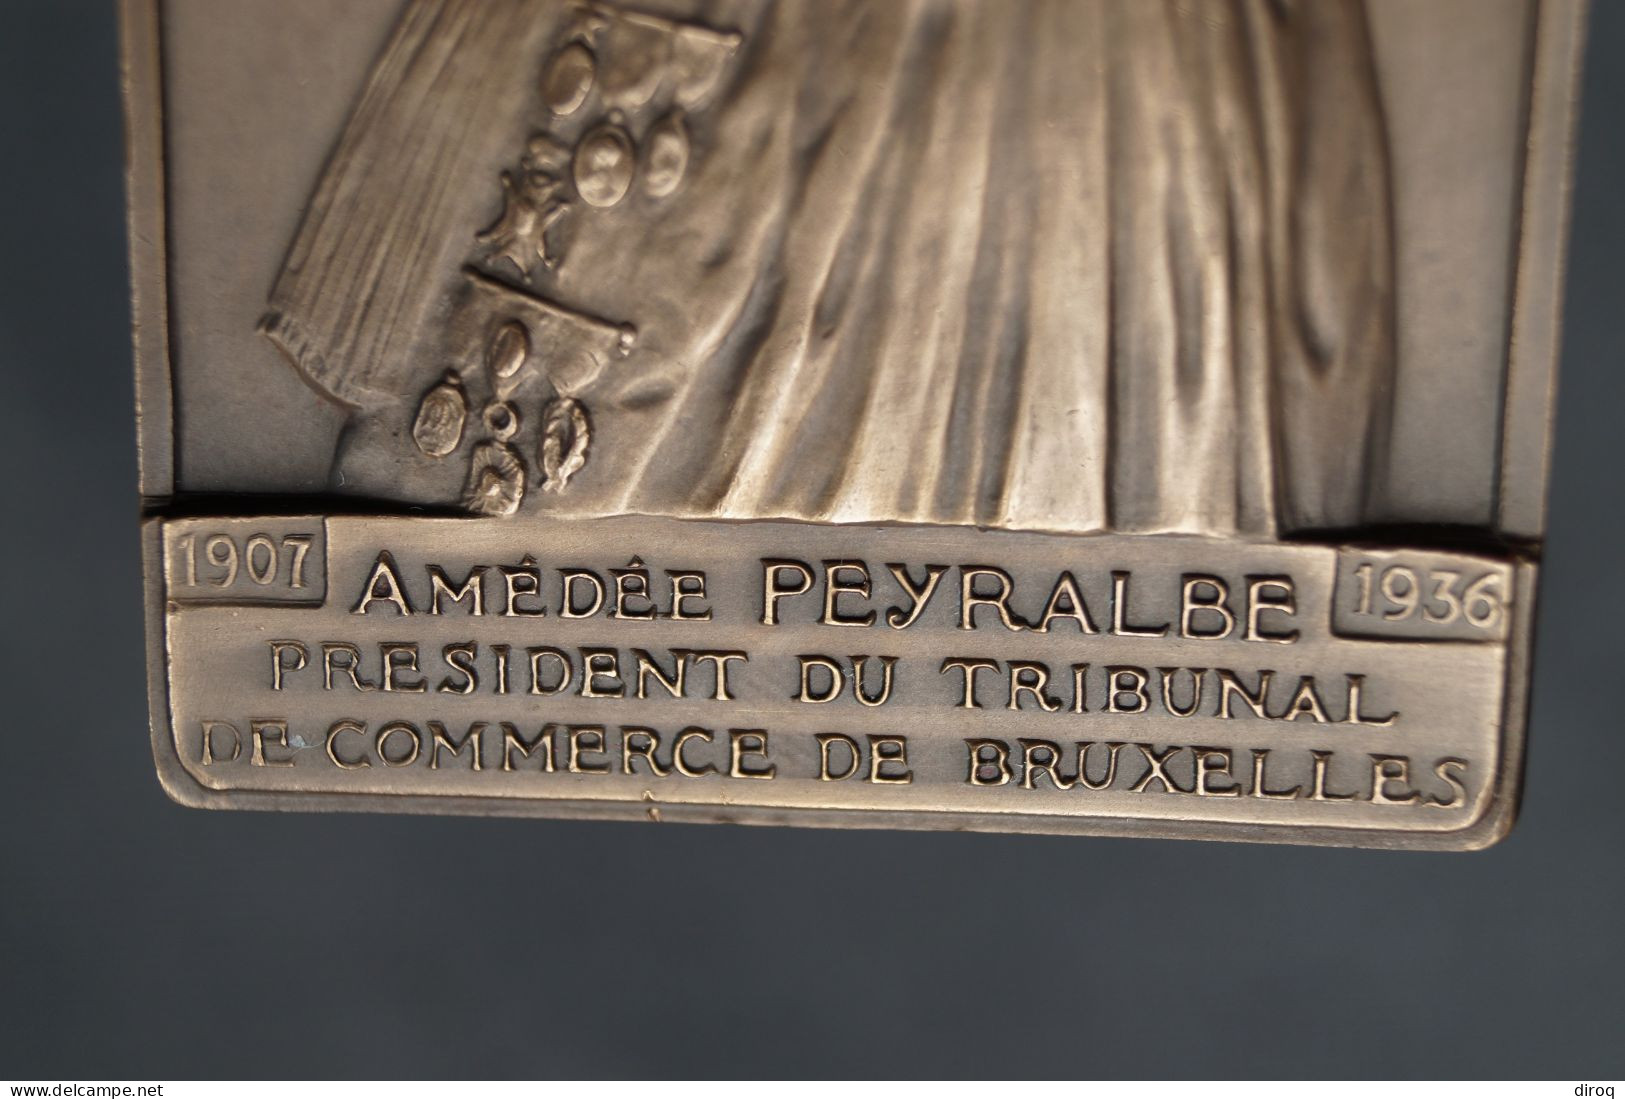 Ancien Bronze Signé Jul. Goessens,à Amédée Peyralbe,1907-1936,Tribunal De Bruxelles,80 Mm./55 Mm. - Bronces